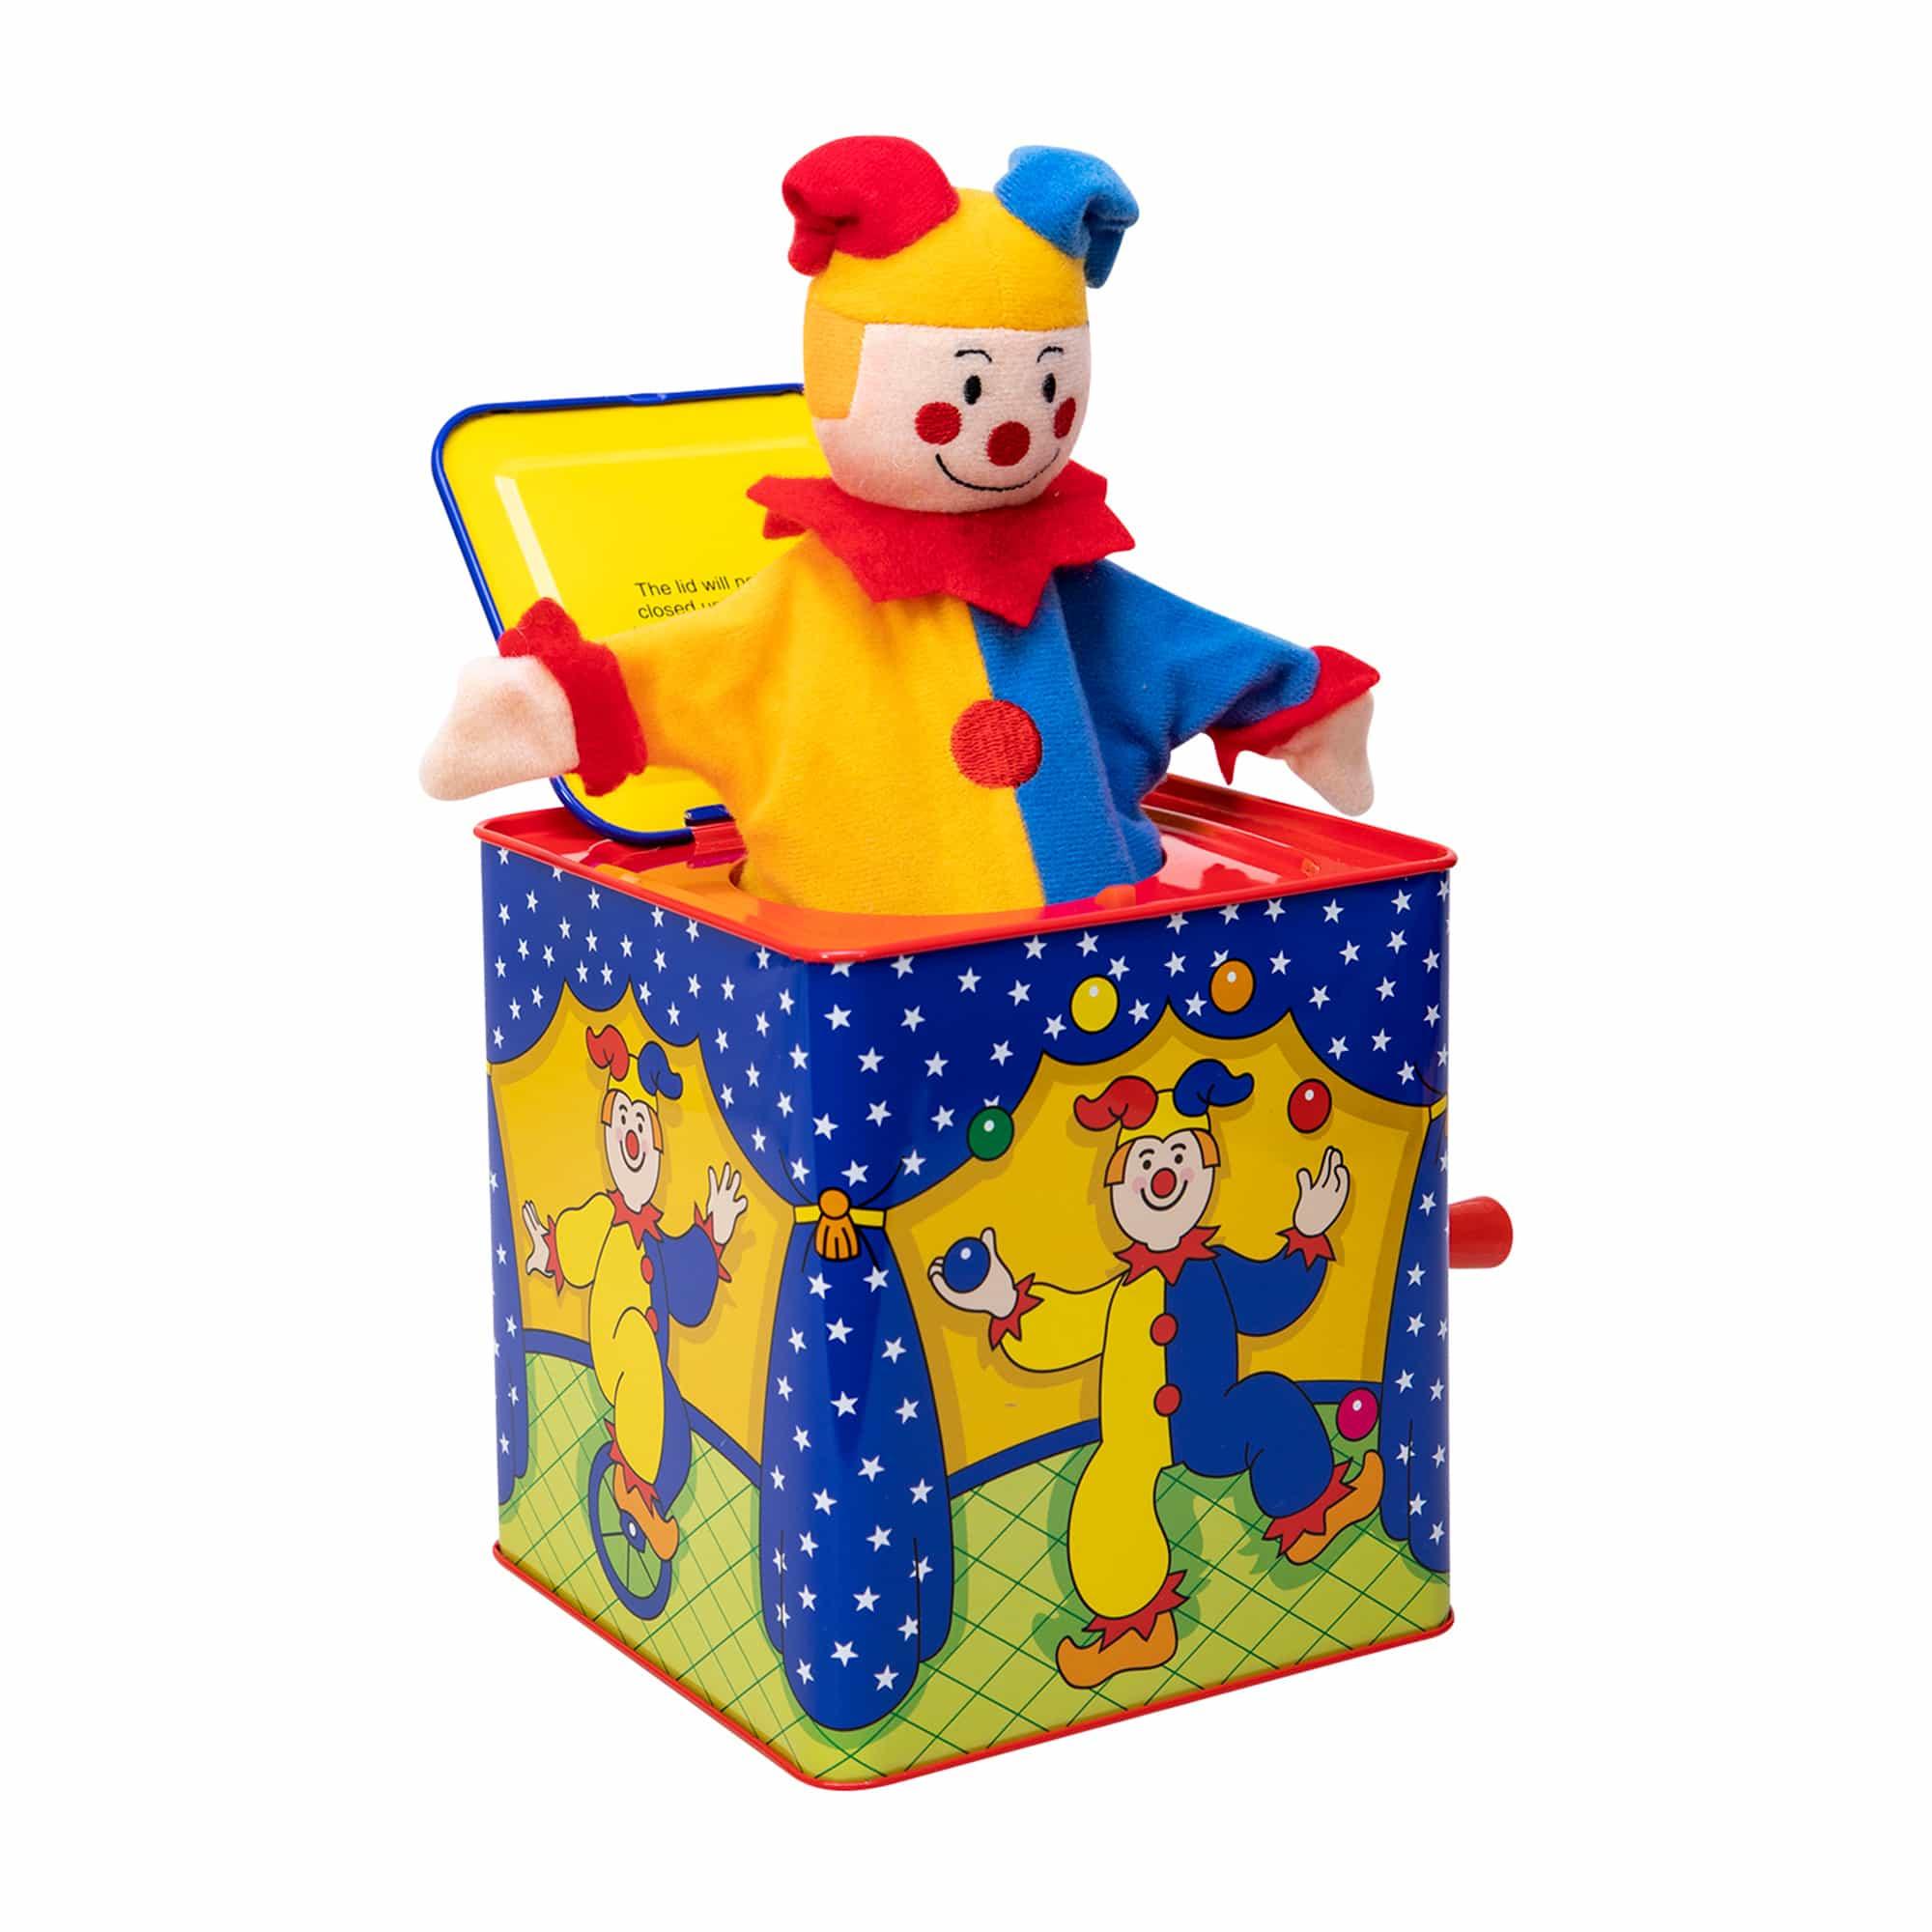 Jack in the Box - Jester the clown — La Ribouldingue